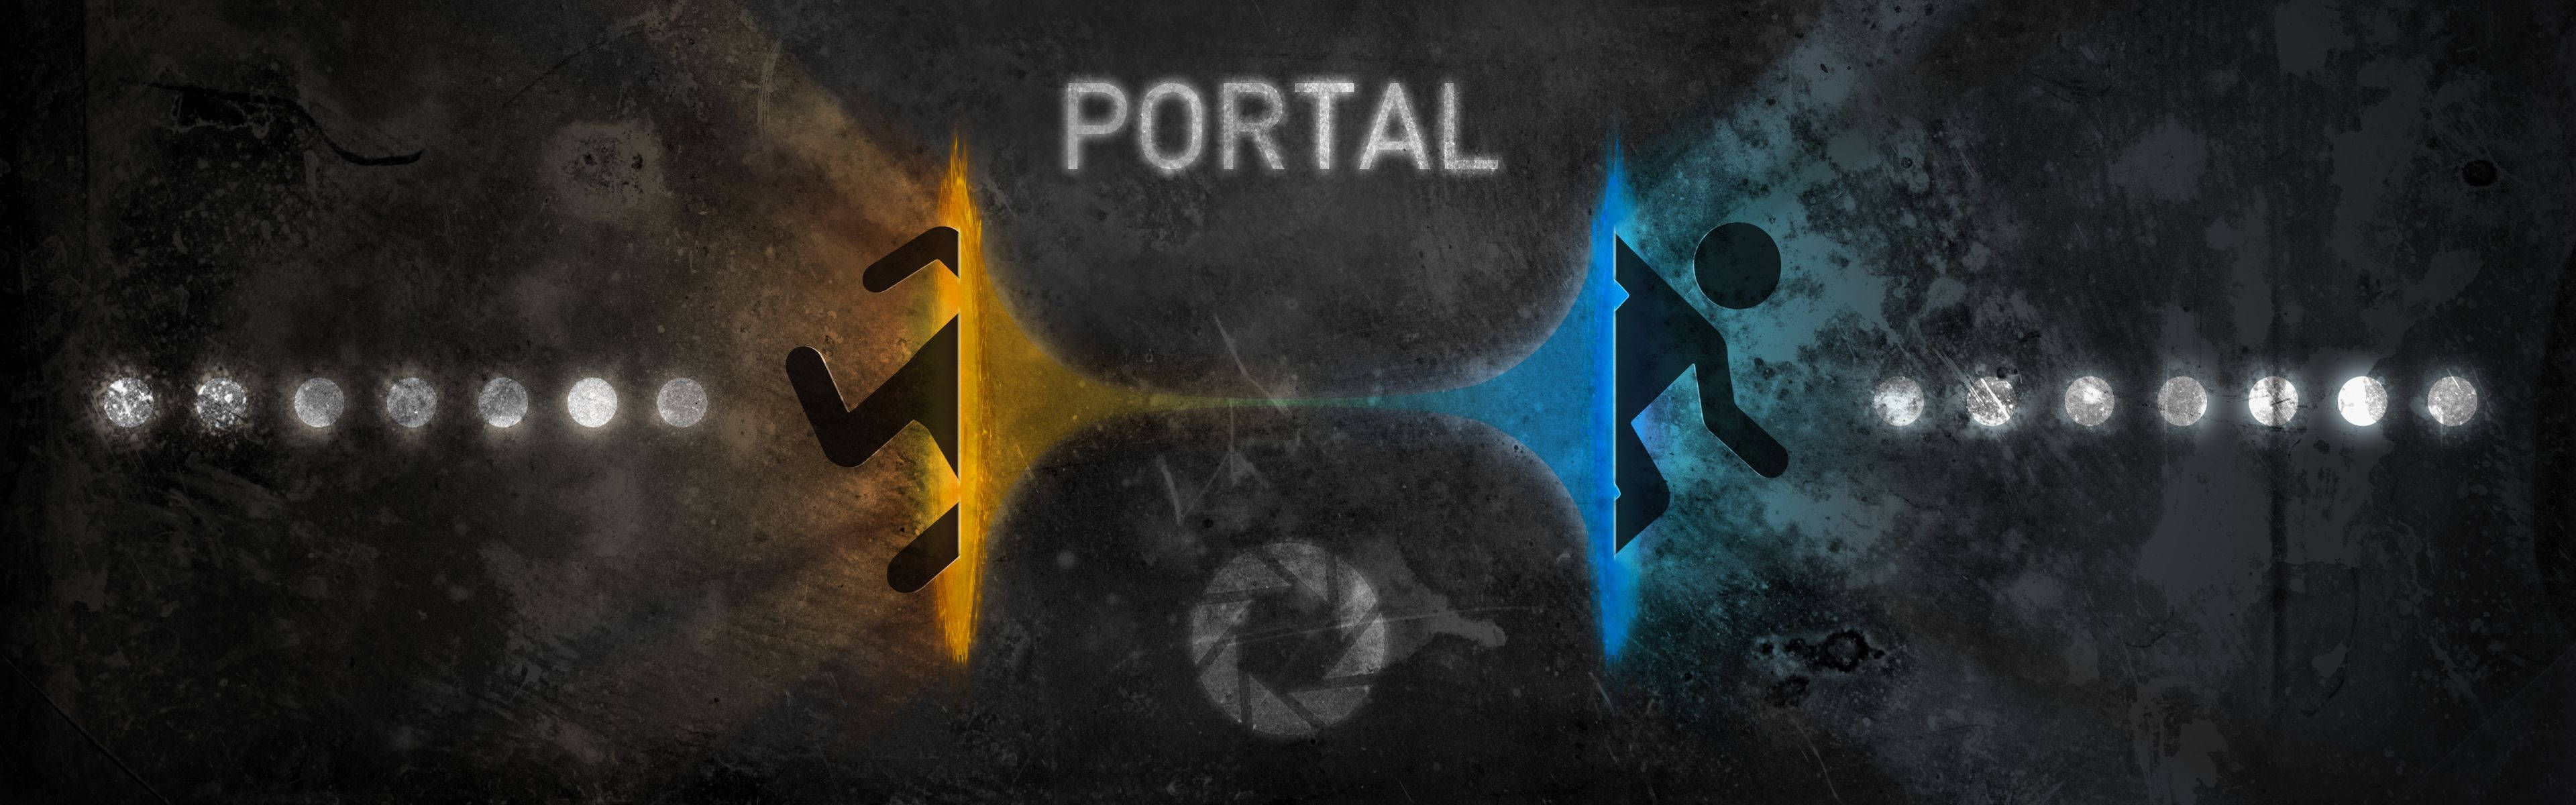 Portalen viser et miniaturebillede af et skærmbillede. Wallpaper